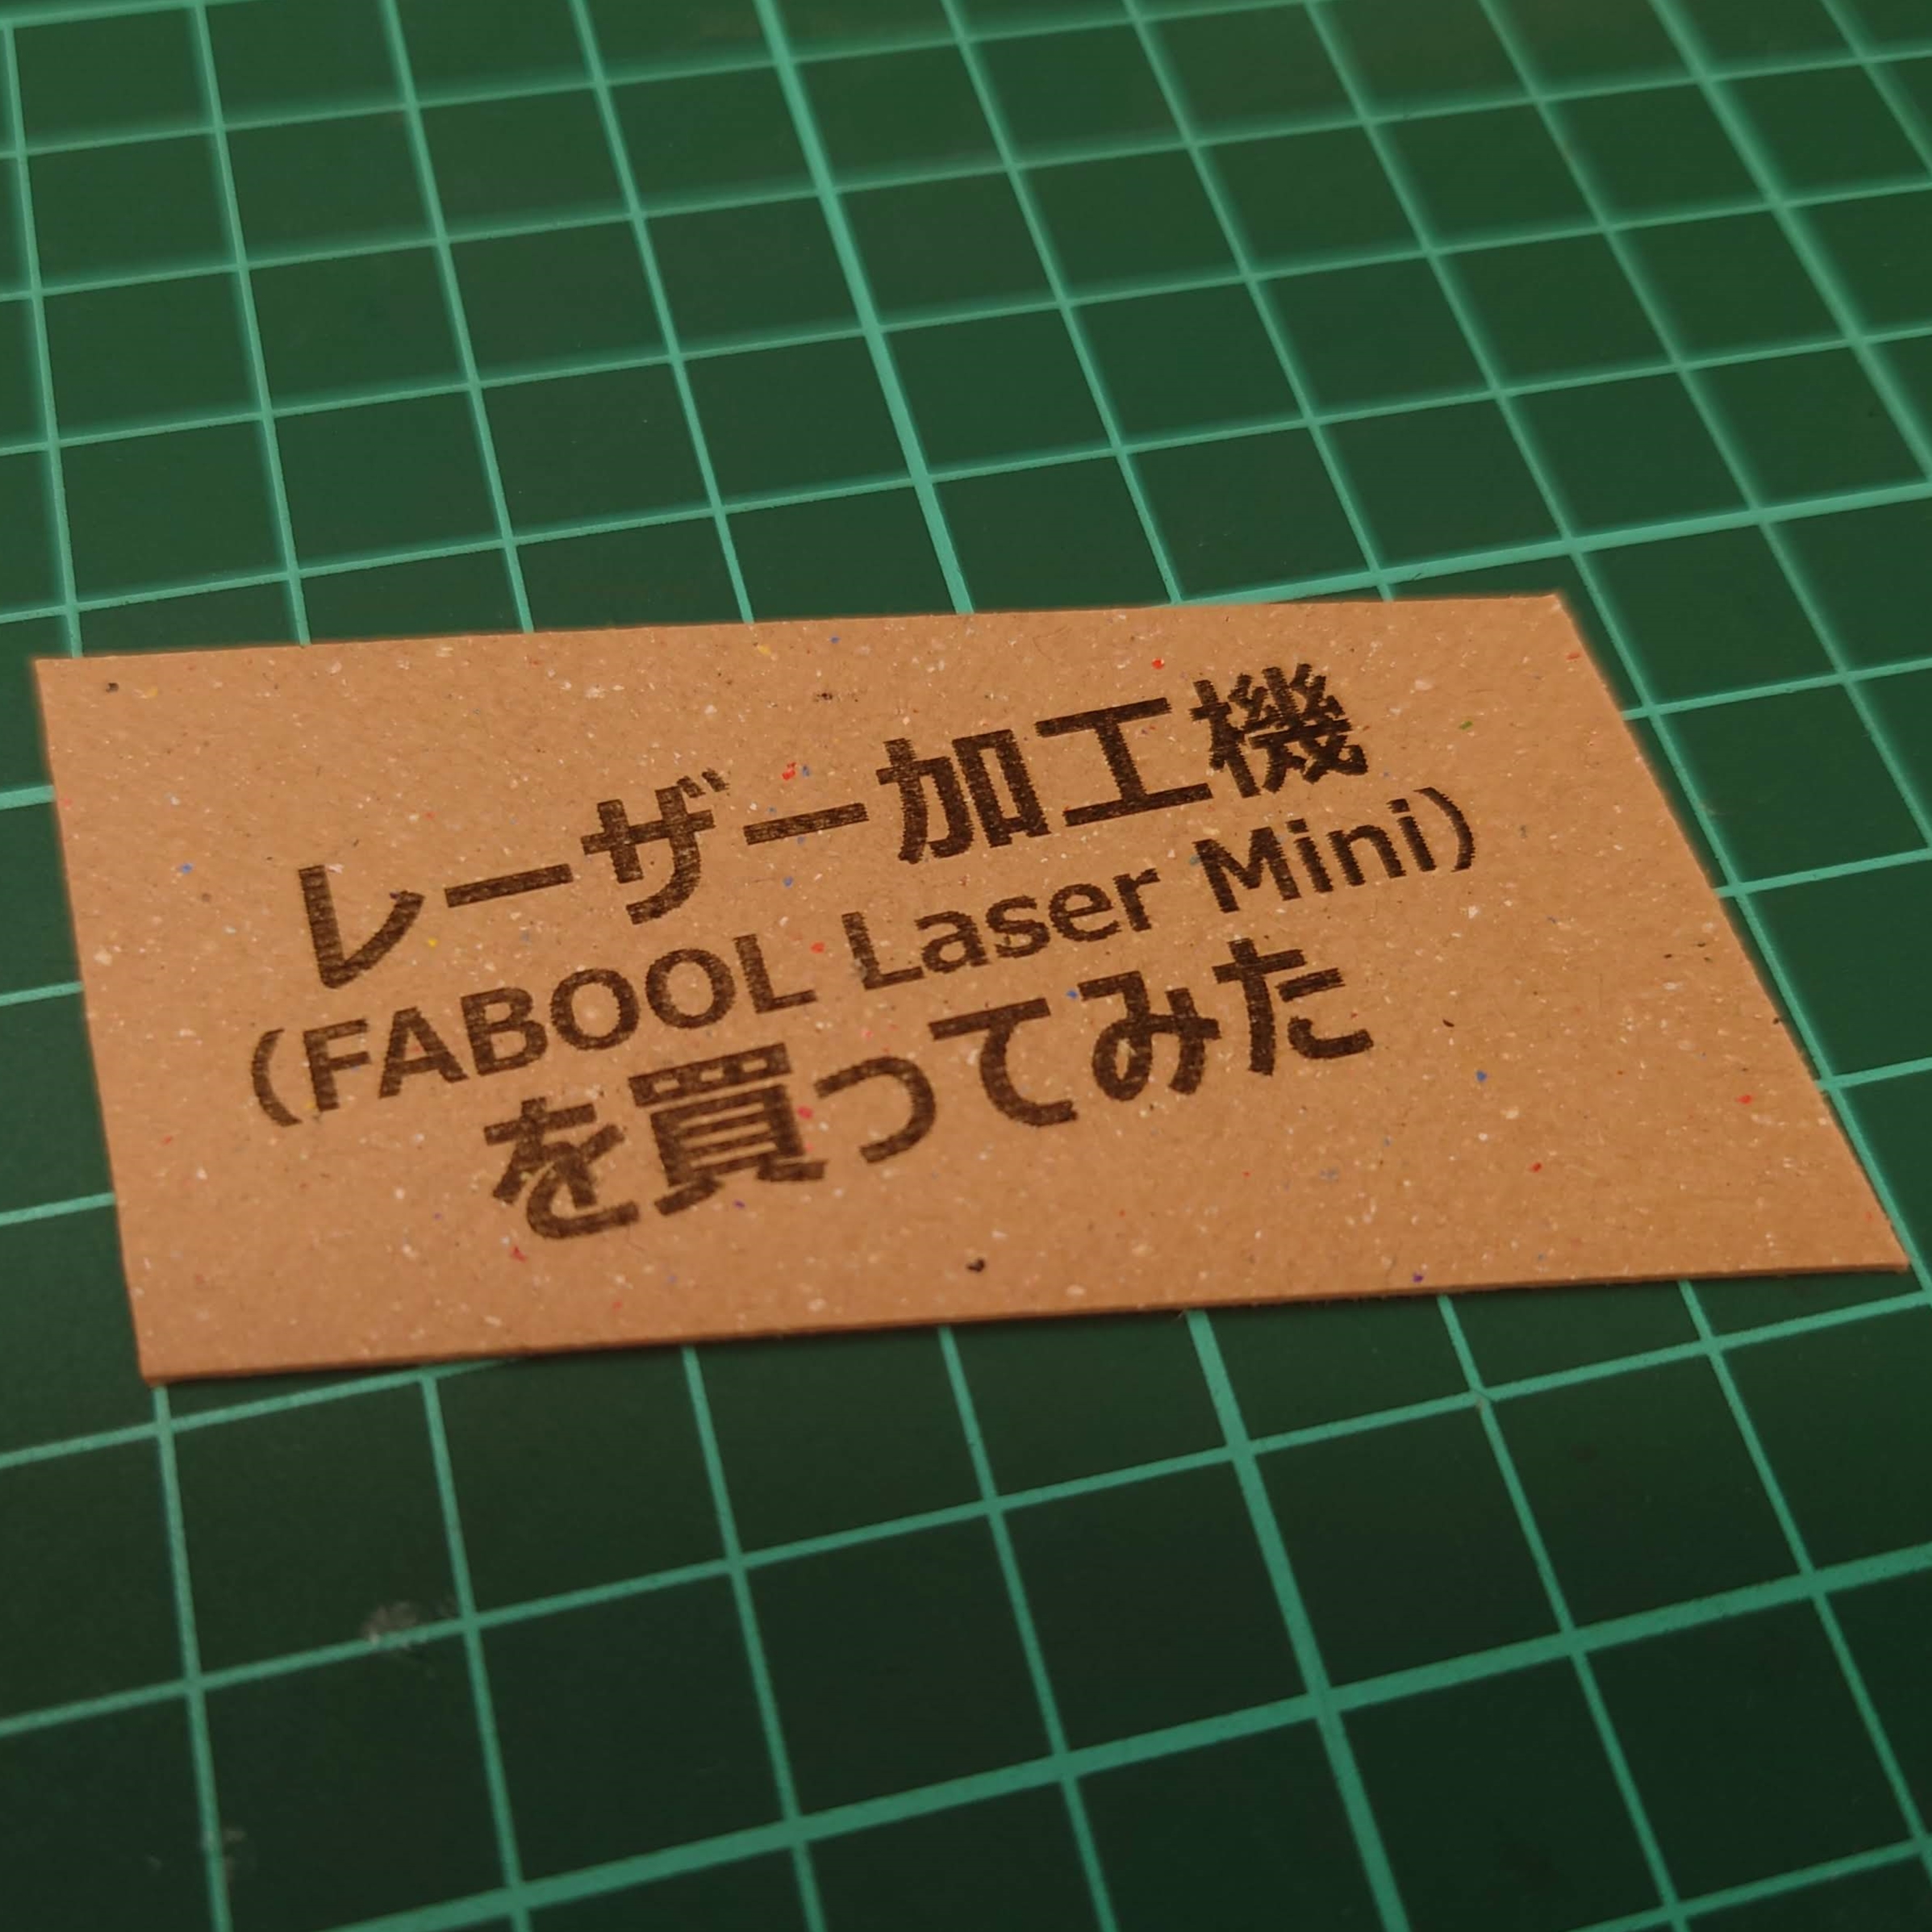 レーザー加工機(FABOOL Laser Mini)を買ってみた - トリミタ